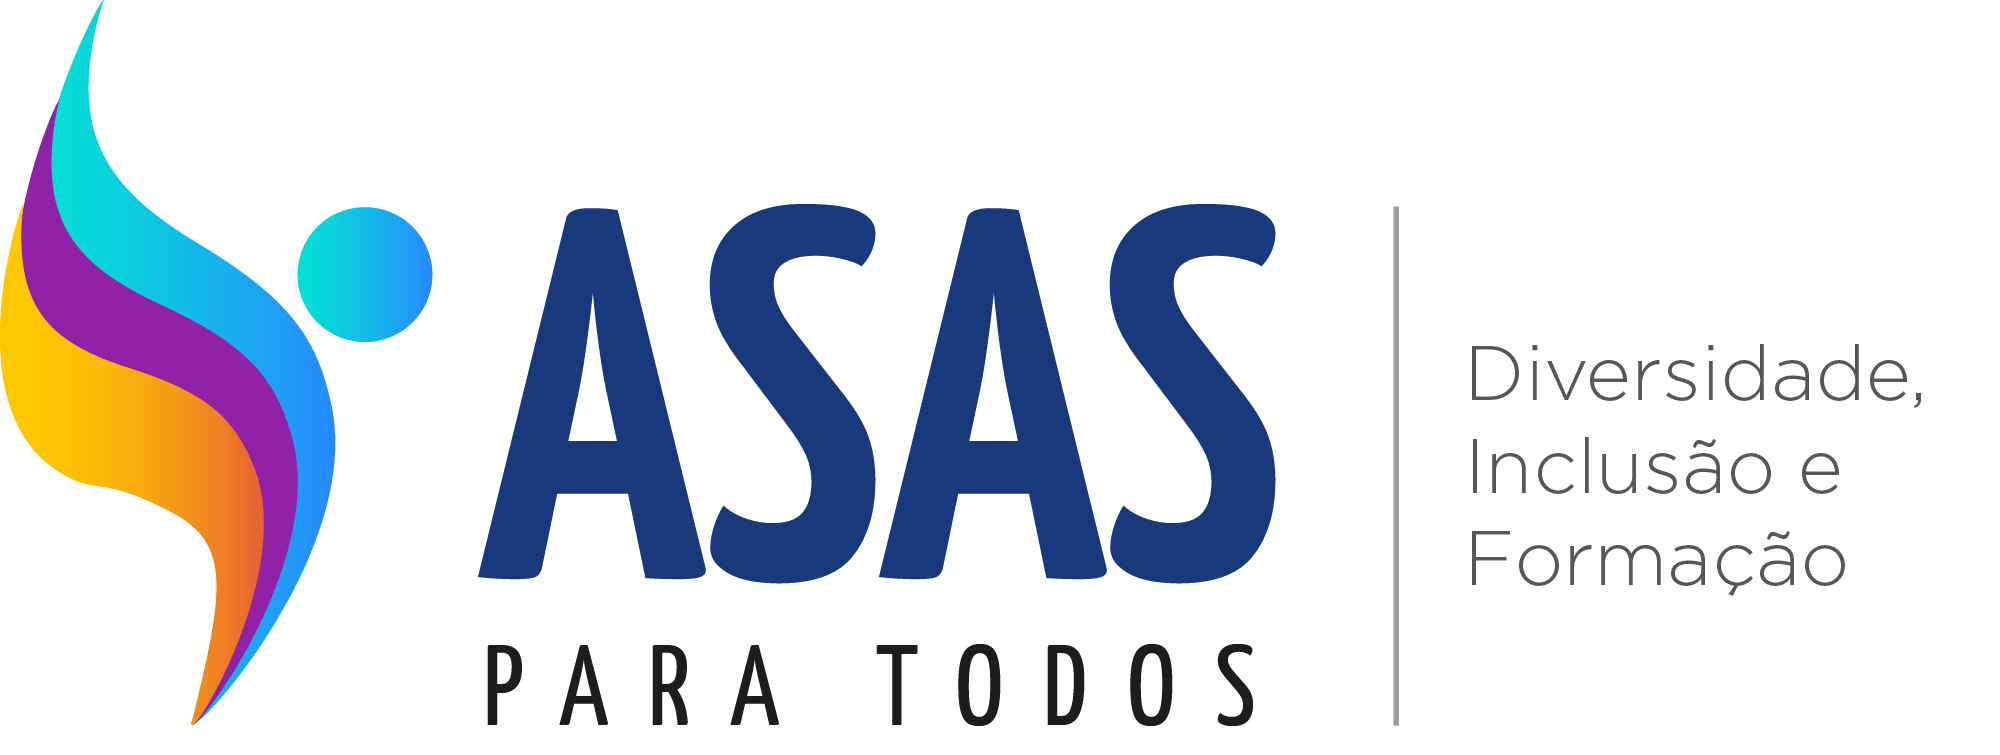 logomarca do programa em forma de asas coloridas escrito Asas para todos, Diversidade, Inclusão e Formação